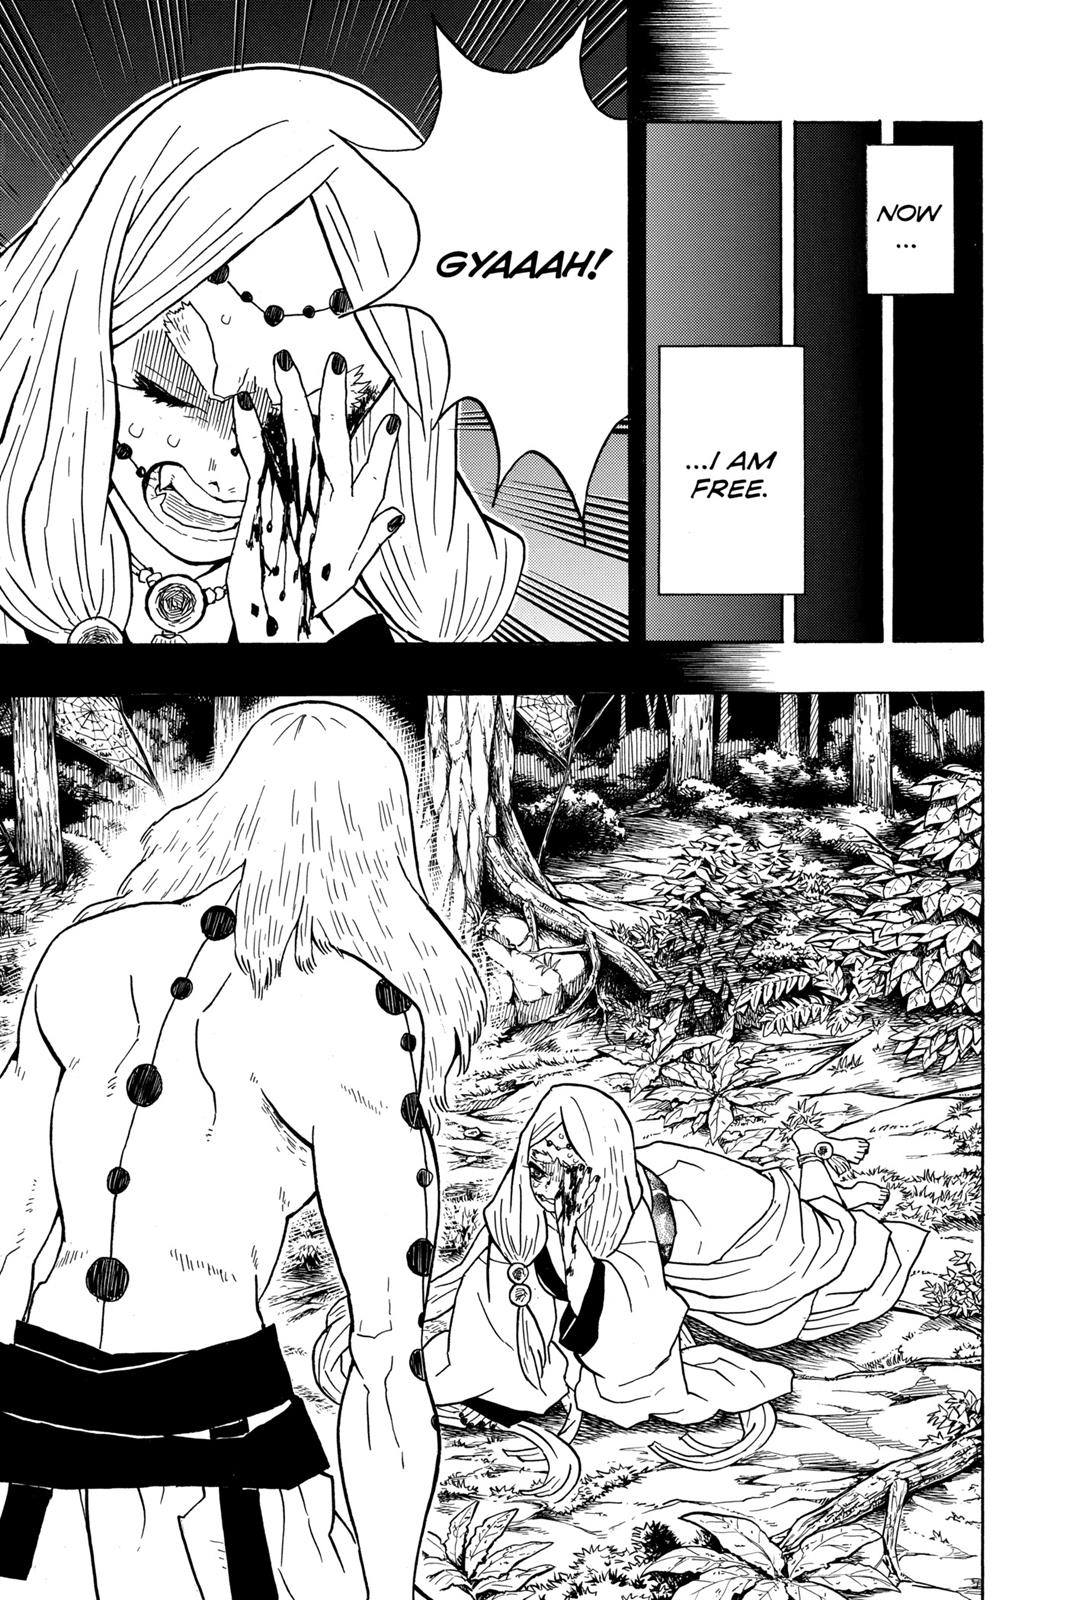 Demon Slayer Manga Manga Chapter - 32 - image 3